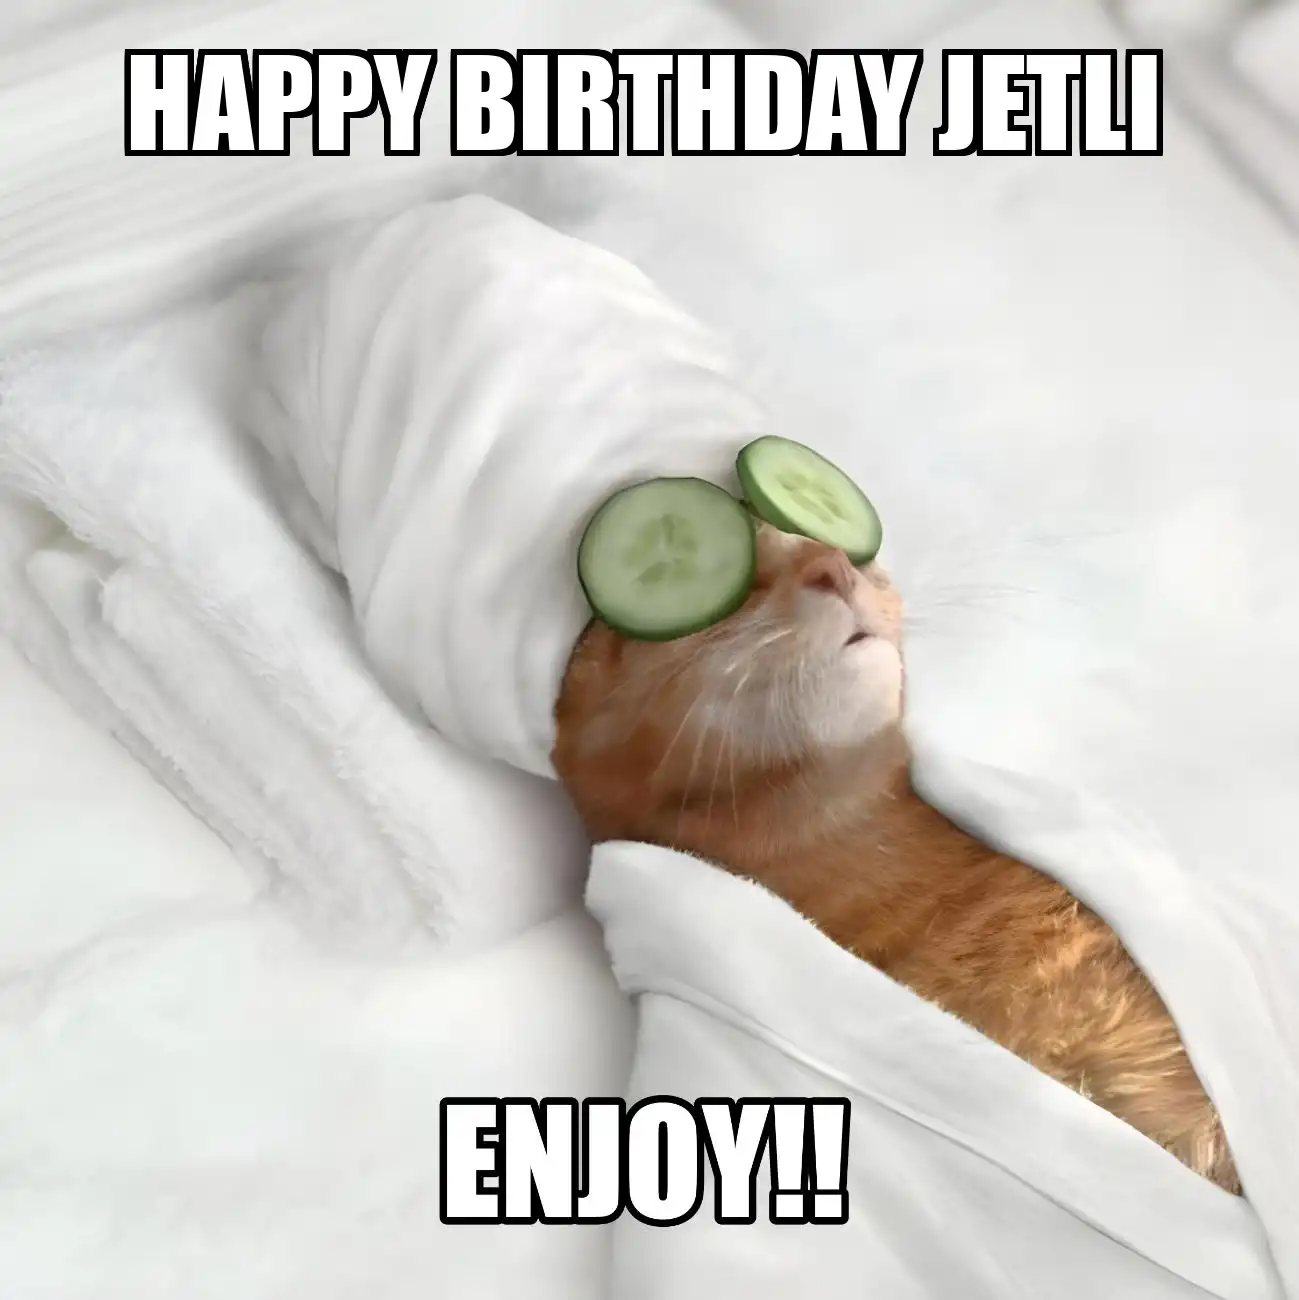 Happy Birthday Jetli Enjoy Cat Meme